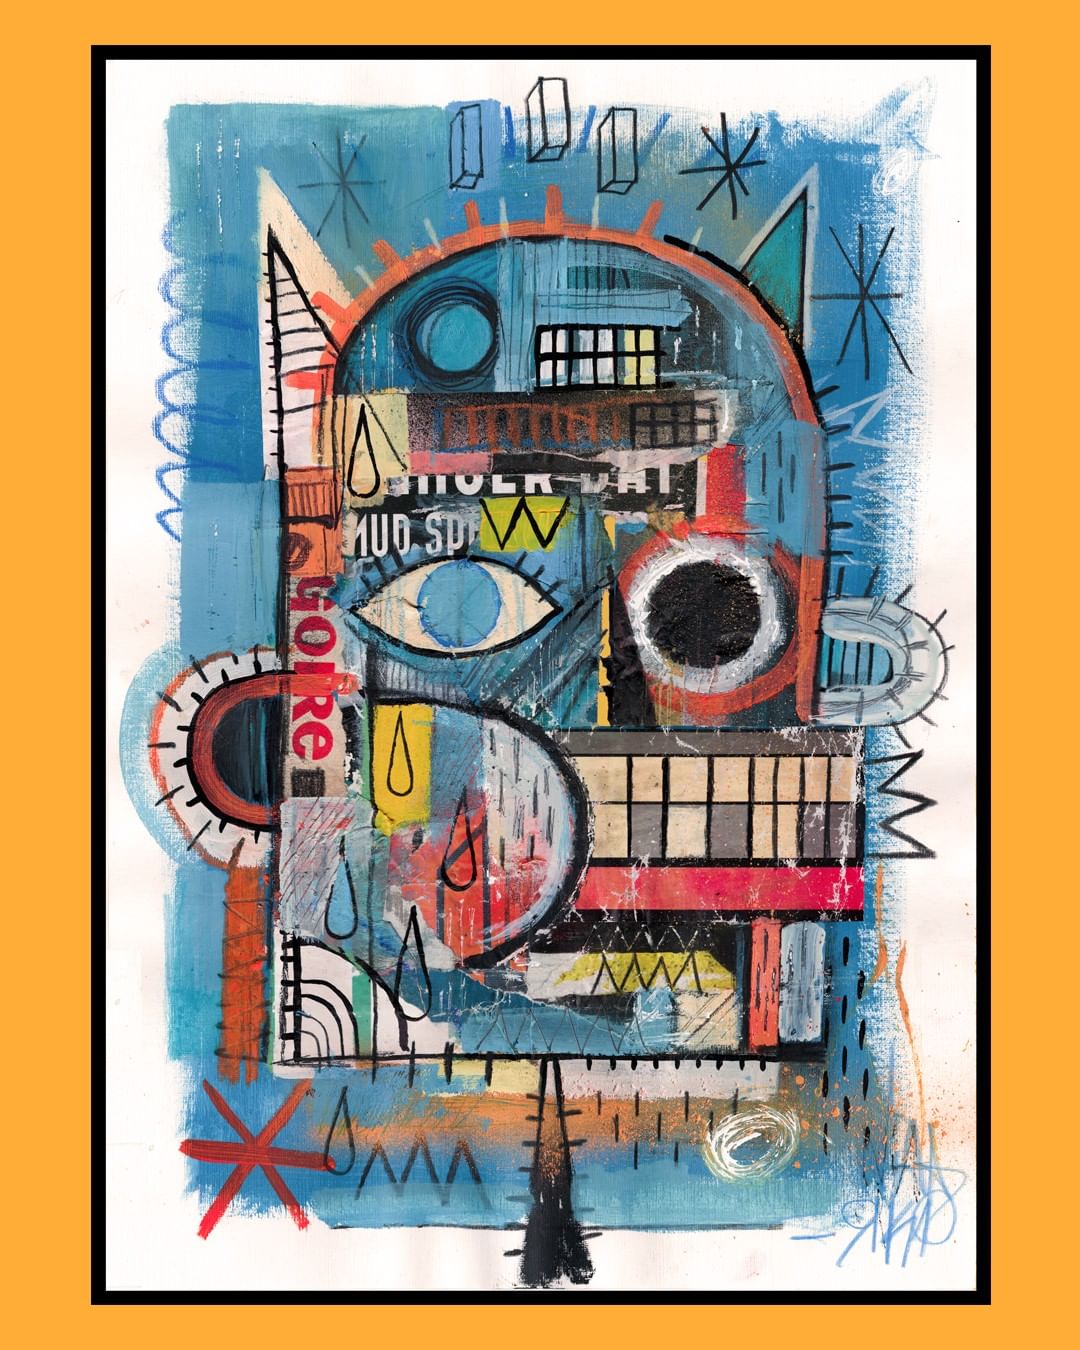 Une peinture qui peut faire penser aux oeuvres de Jean-Michel Basquiat